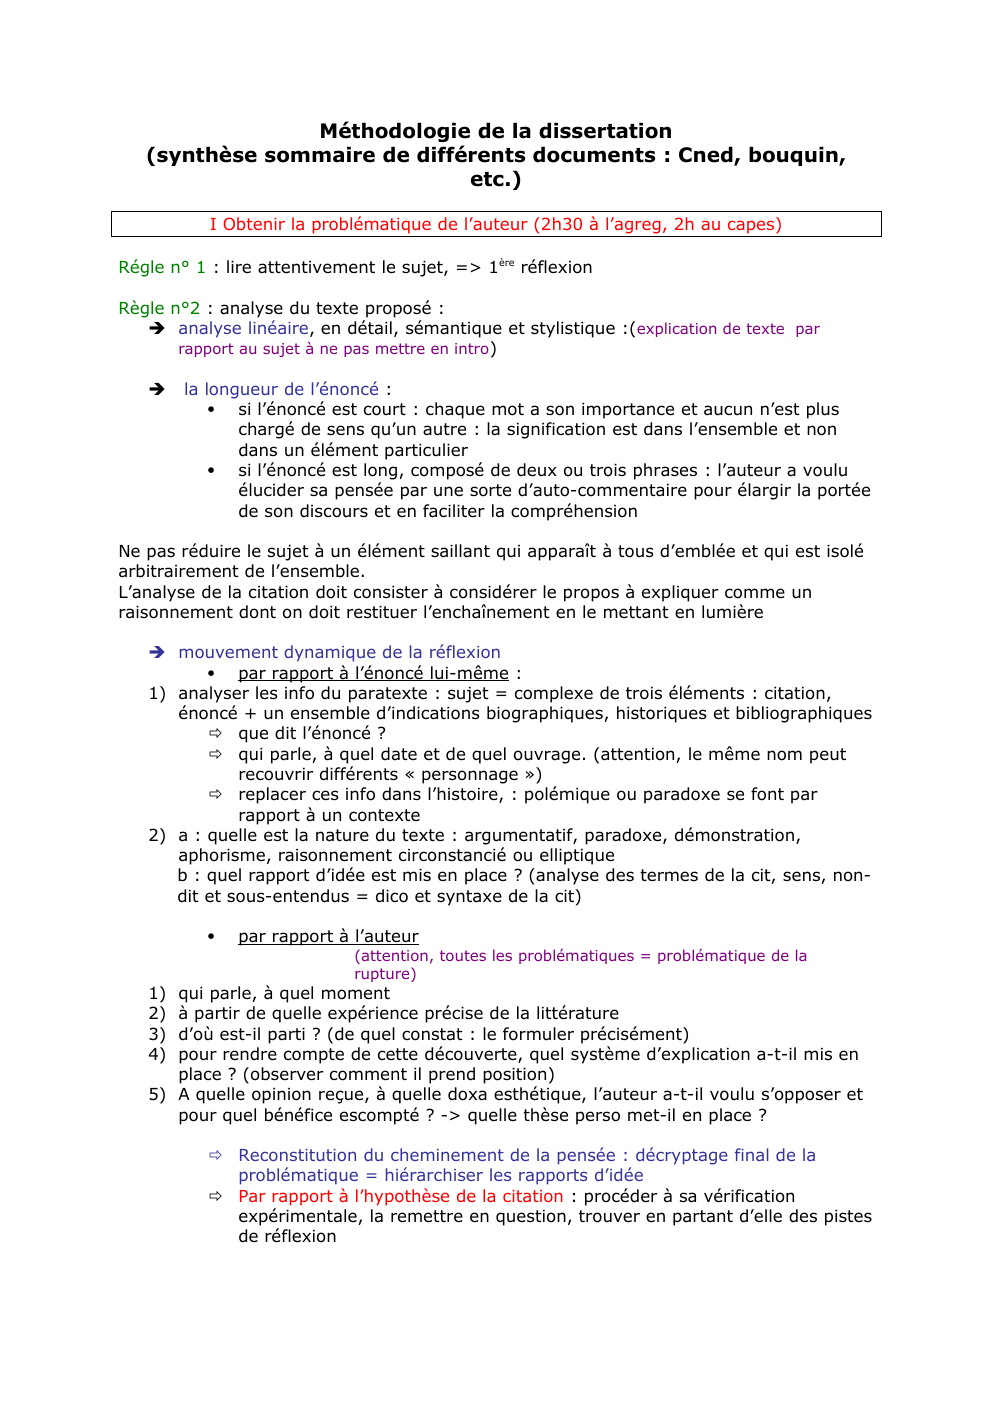 Prévisualisation du document Méthodologie de la dissertation (synthèse sommaire de différents documents : Cned, bouquin, etc.) pour études universitaires - Licence